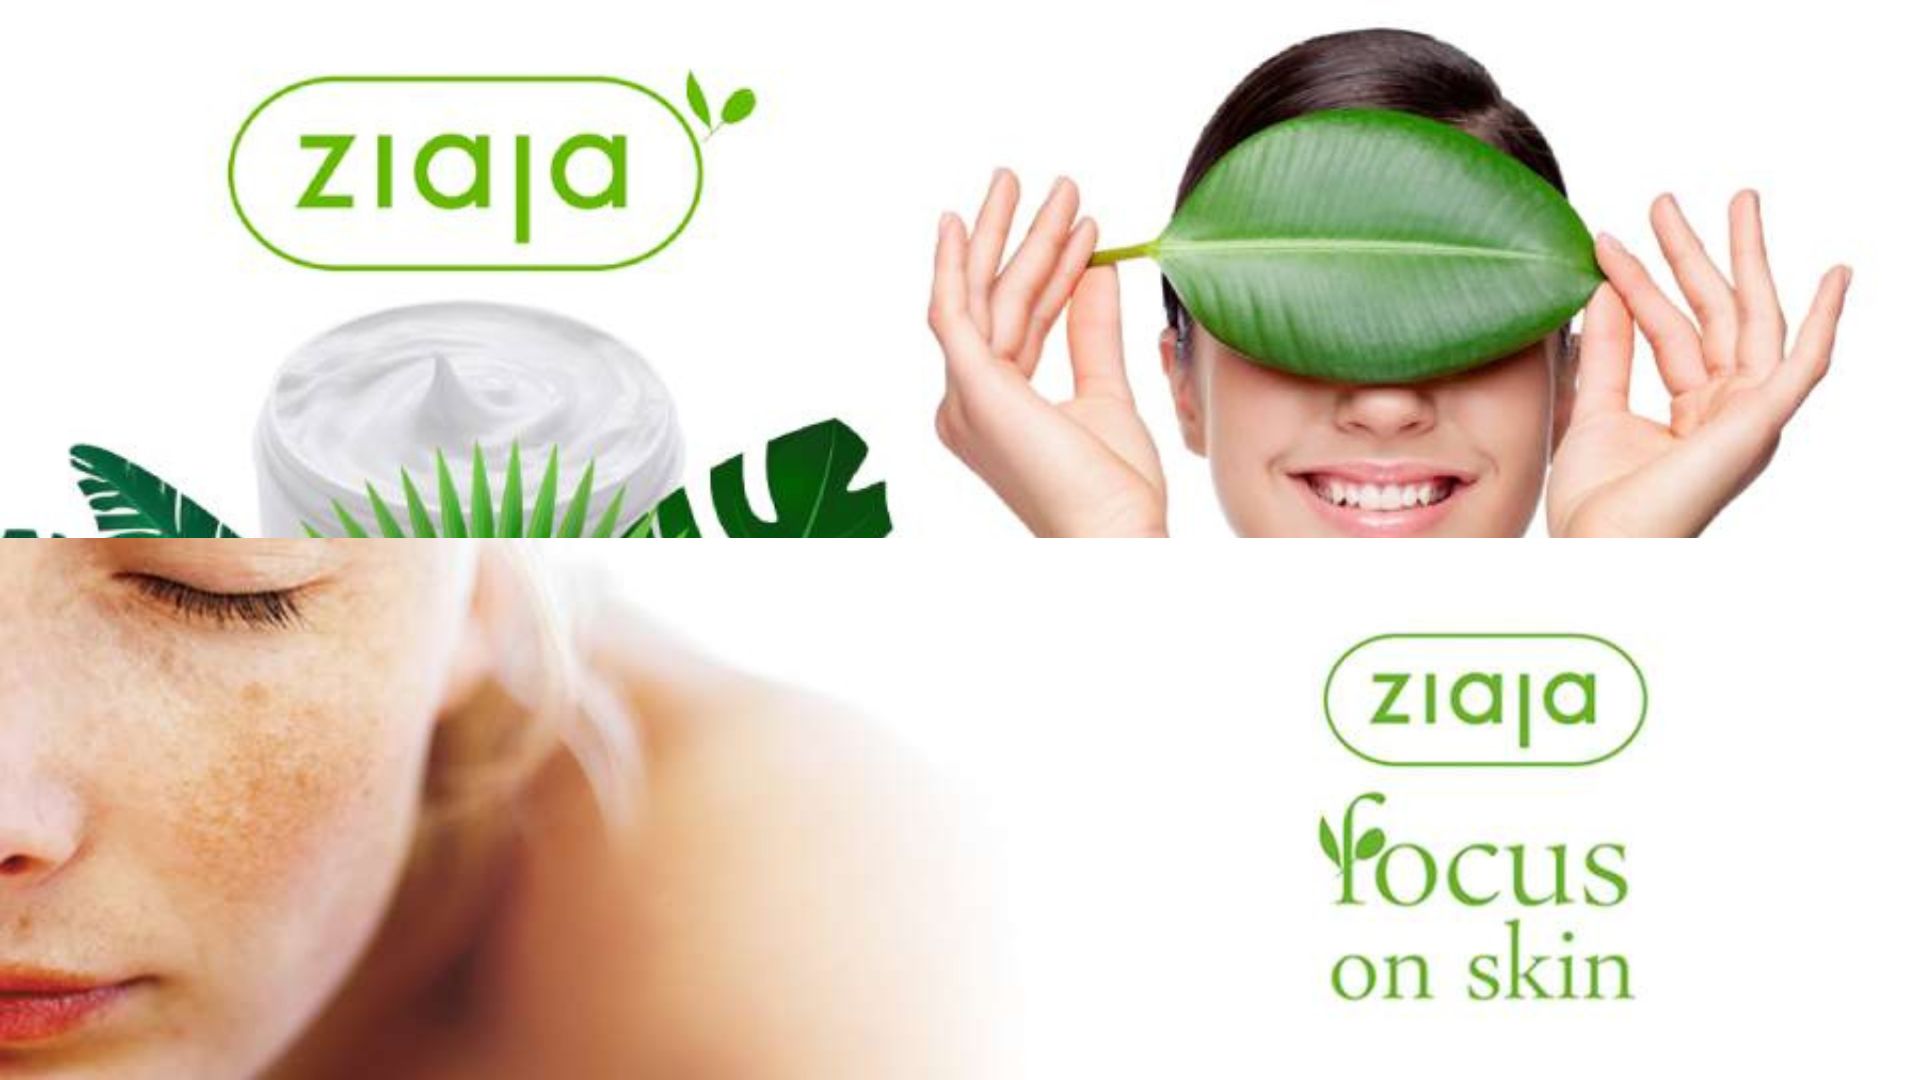 Ziaja là hãng dược mỹ phẩm lớn nhất và uy tín nhất tại Ba Lan (Nguồn: Internet)